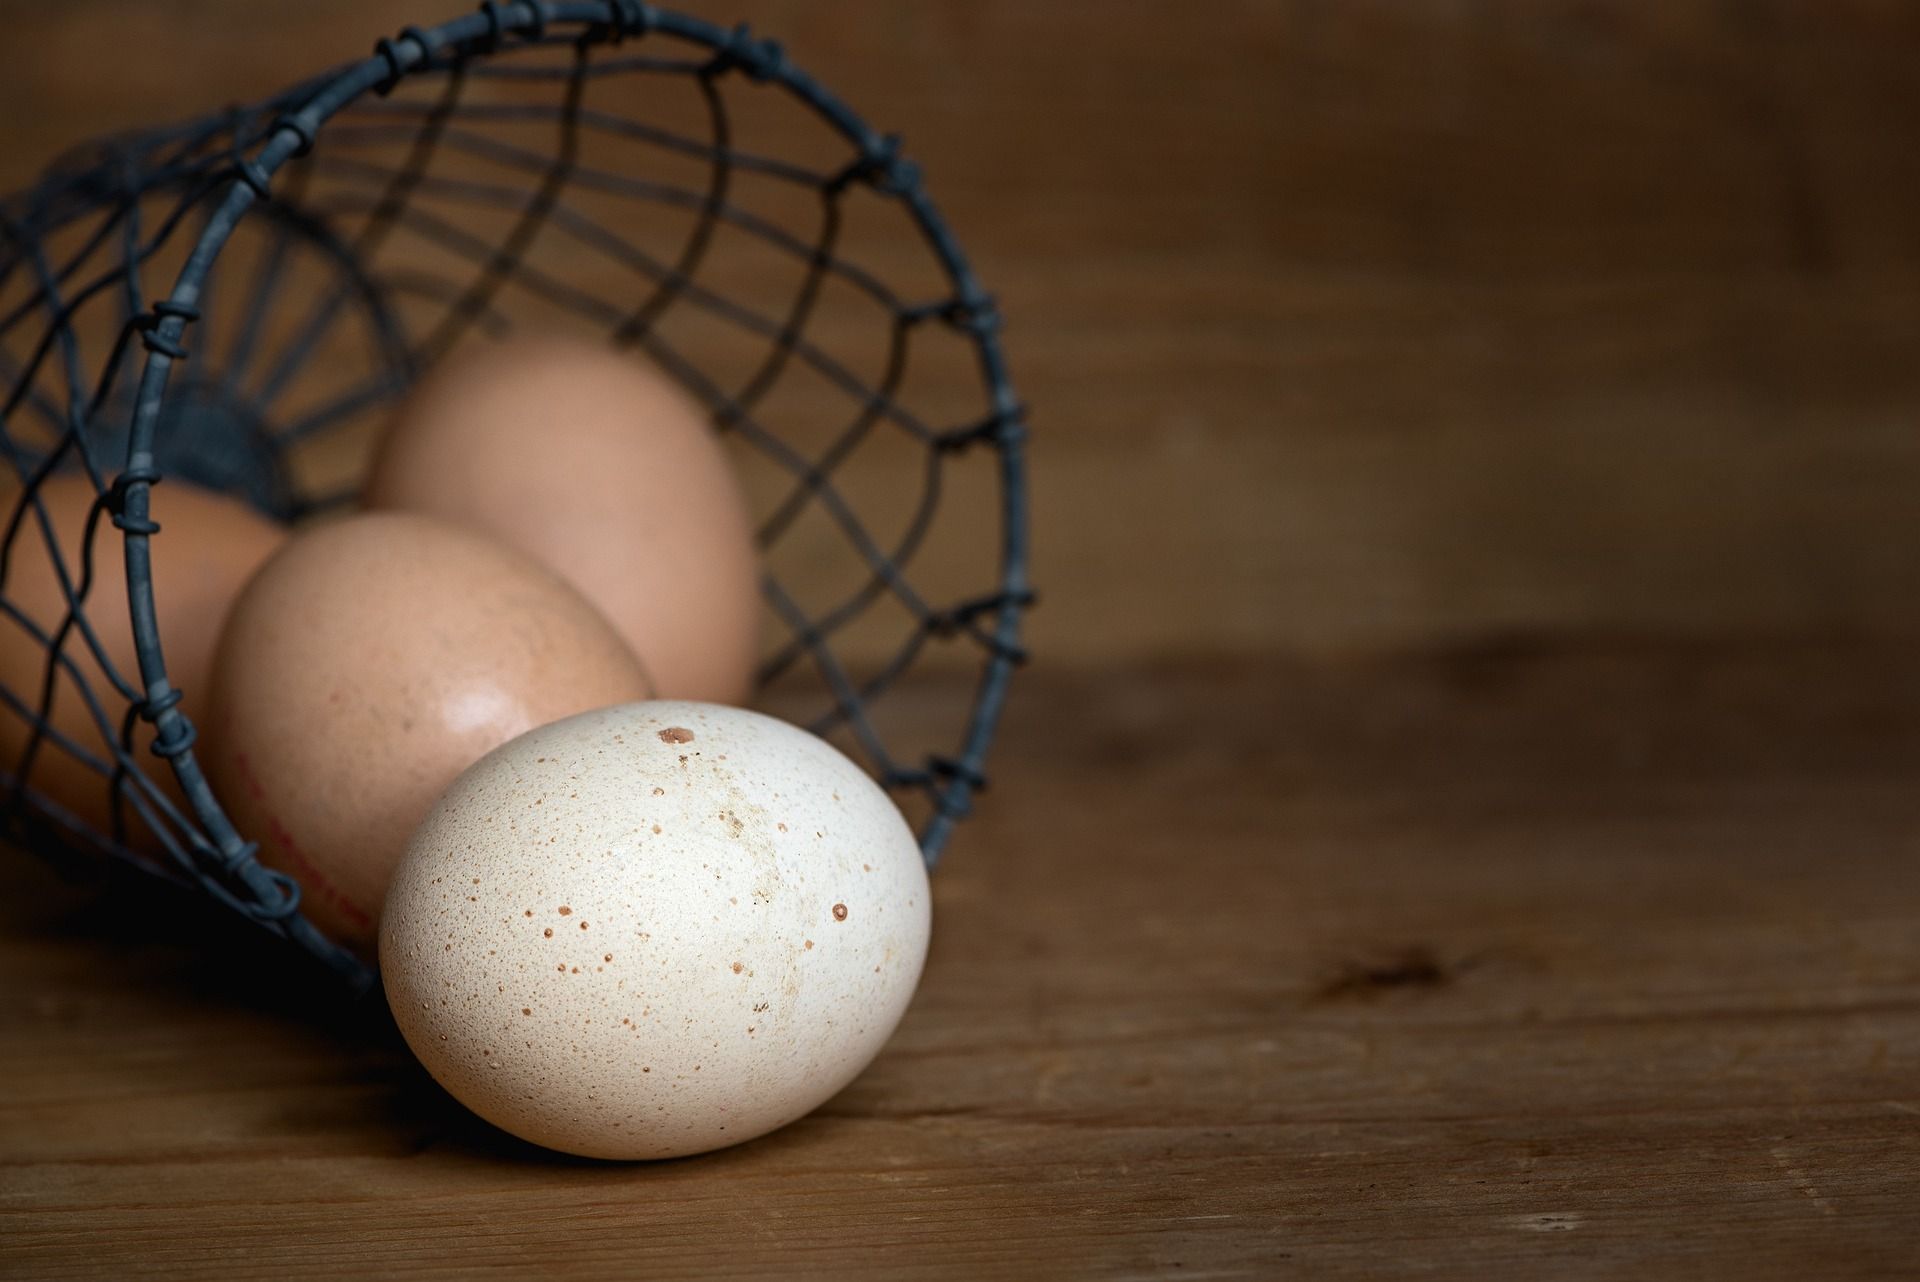 Awas! Konsumsi Telur Disebut Bisa Tingkatkan Risiko Serangan Jantung dan Stroke, Cek Fakta Kebenarannya